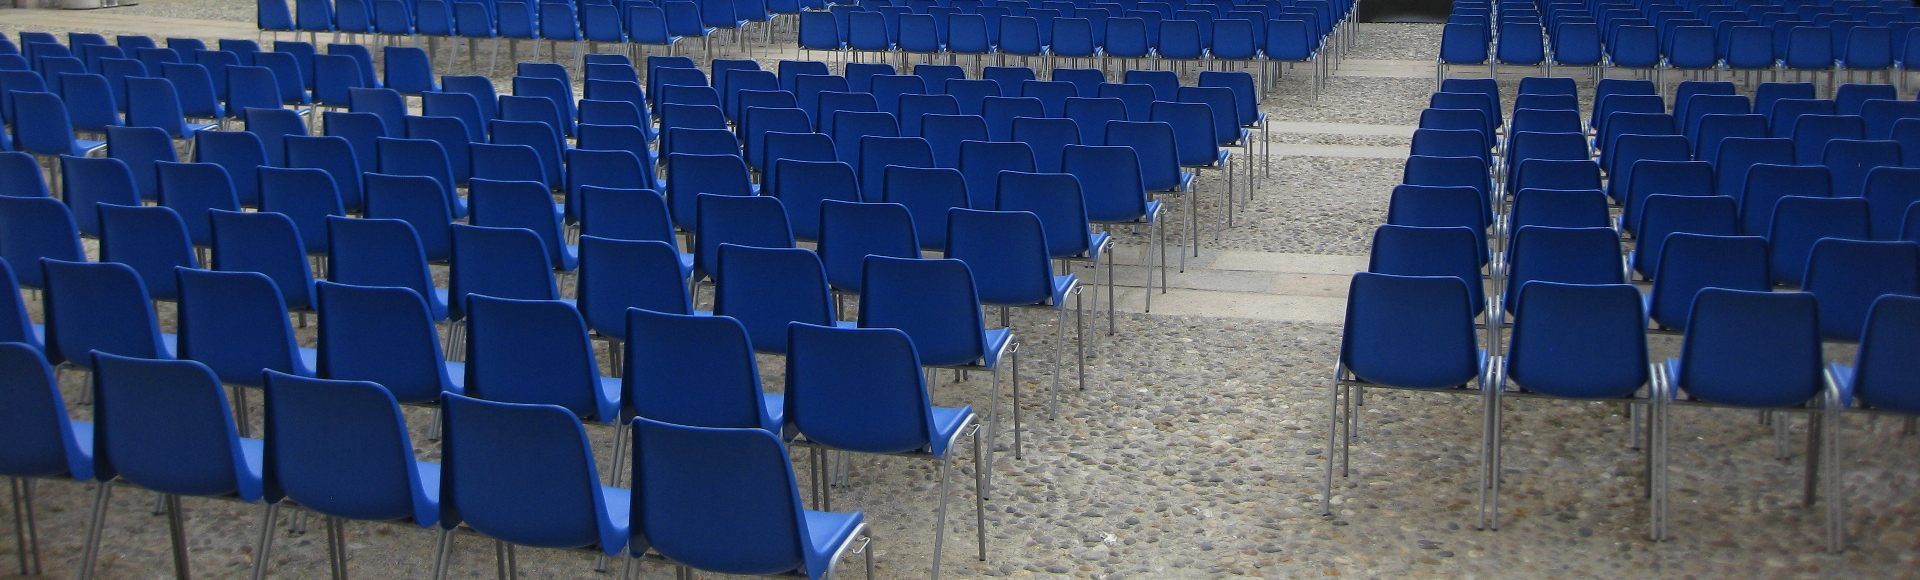 Stühle für Konferenzen